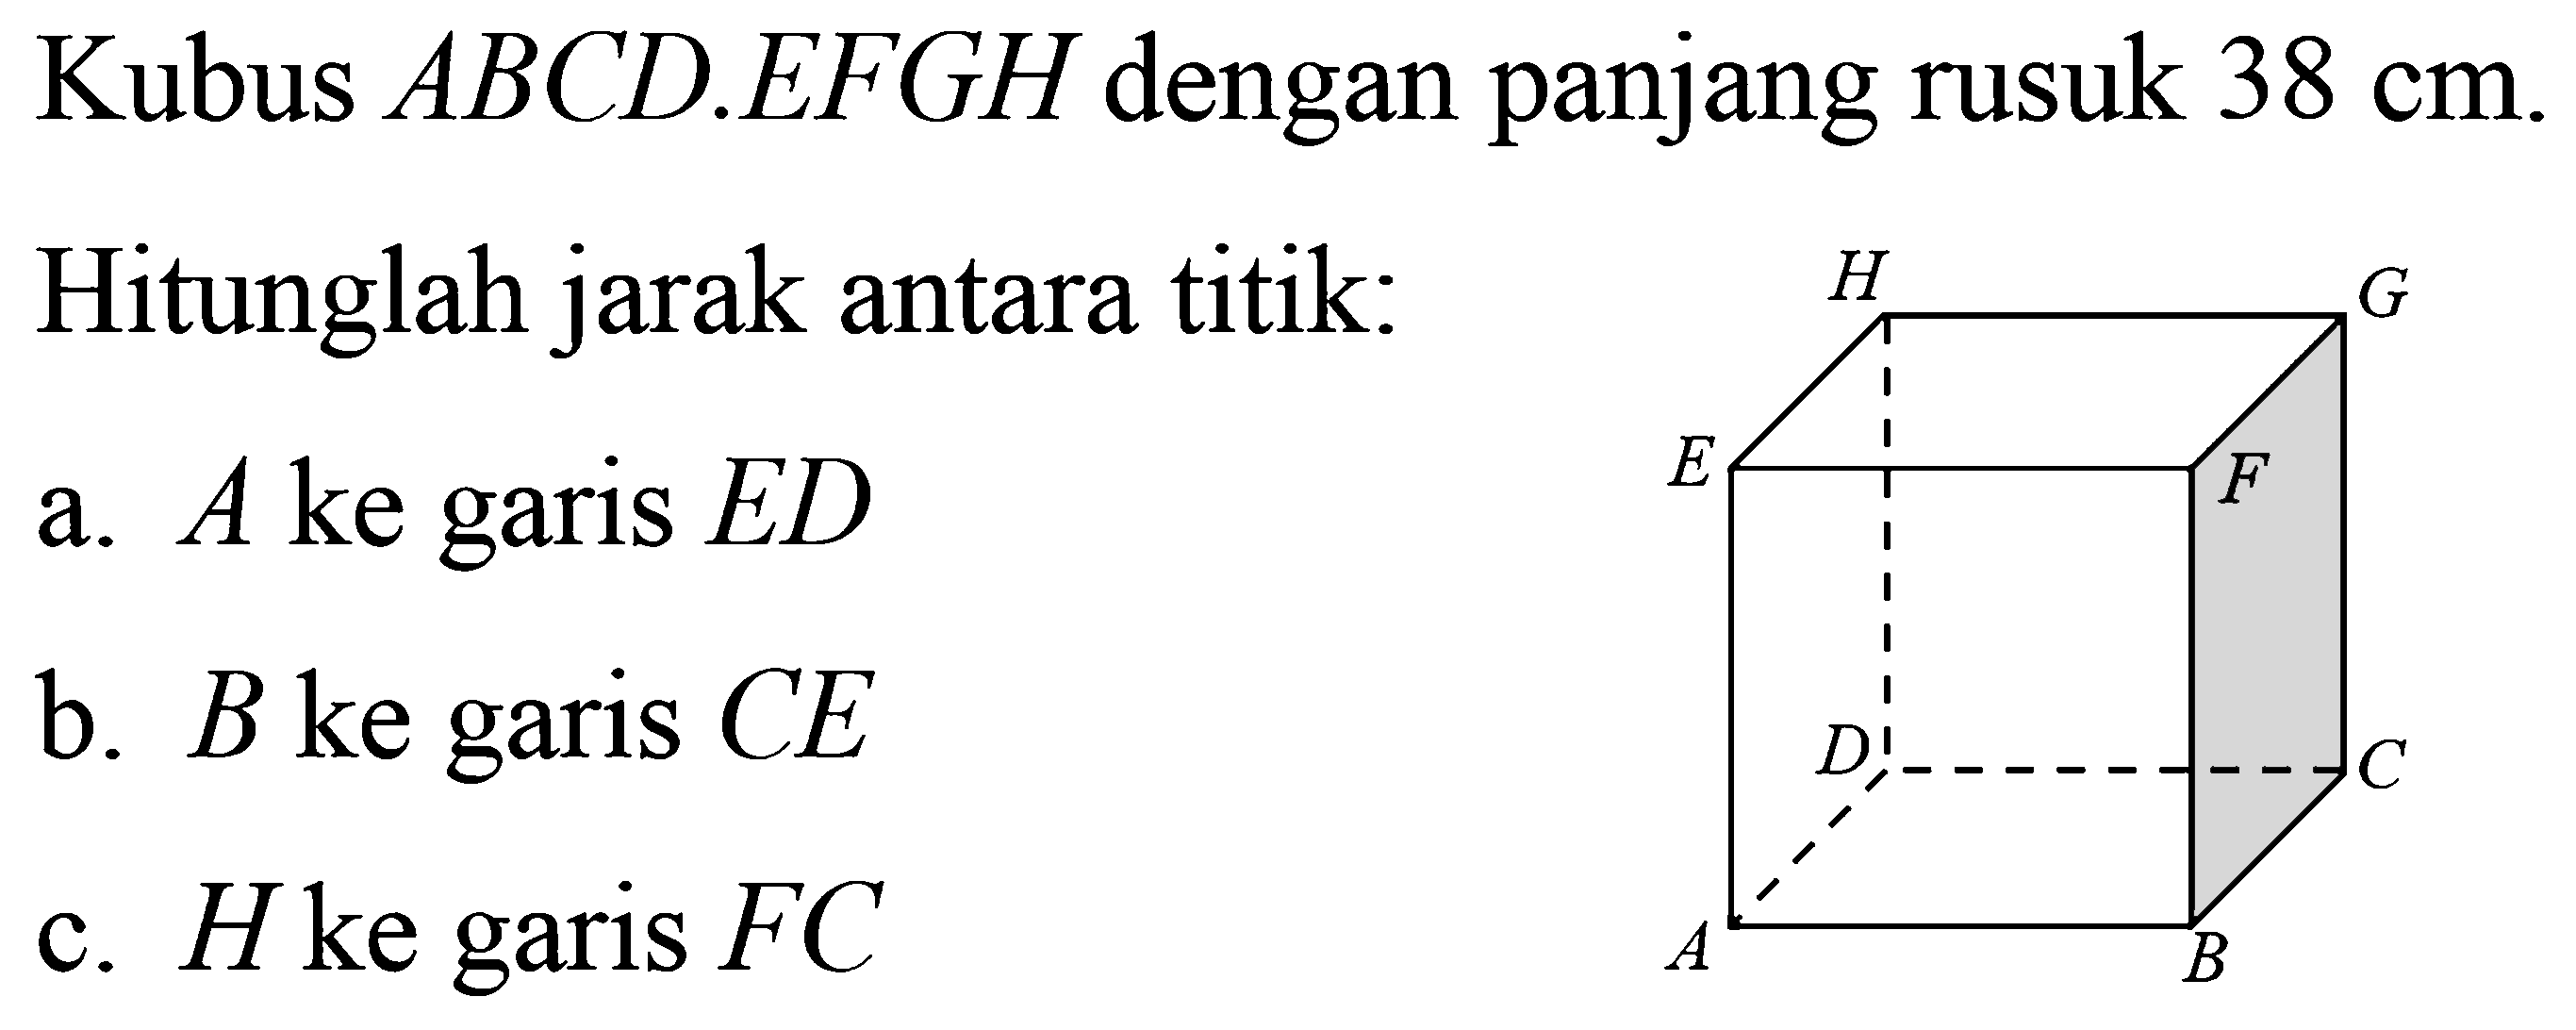 Kubus ABCD.EFGH dengan panjang rusuk 38 cm. Hitunglah jarak antara titik: a. A ke garis ED b. B ke garis CE c. H ke garis FC ABCDEFGH